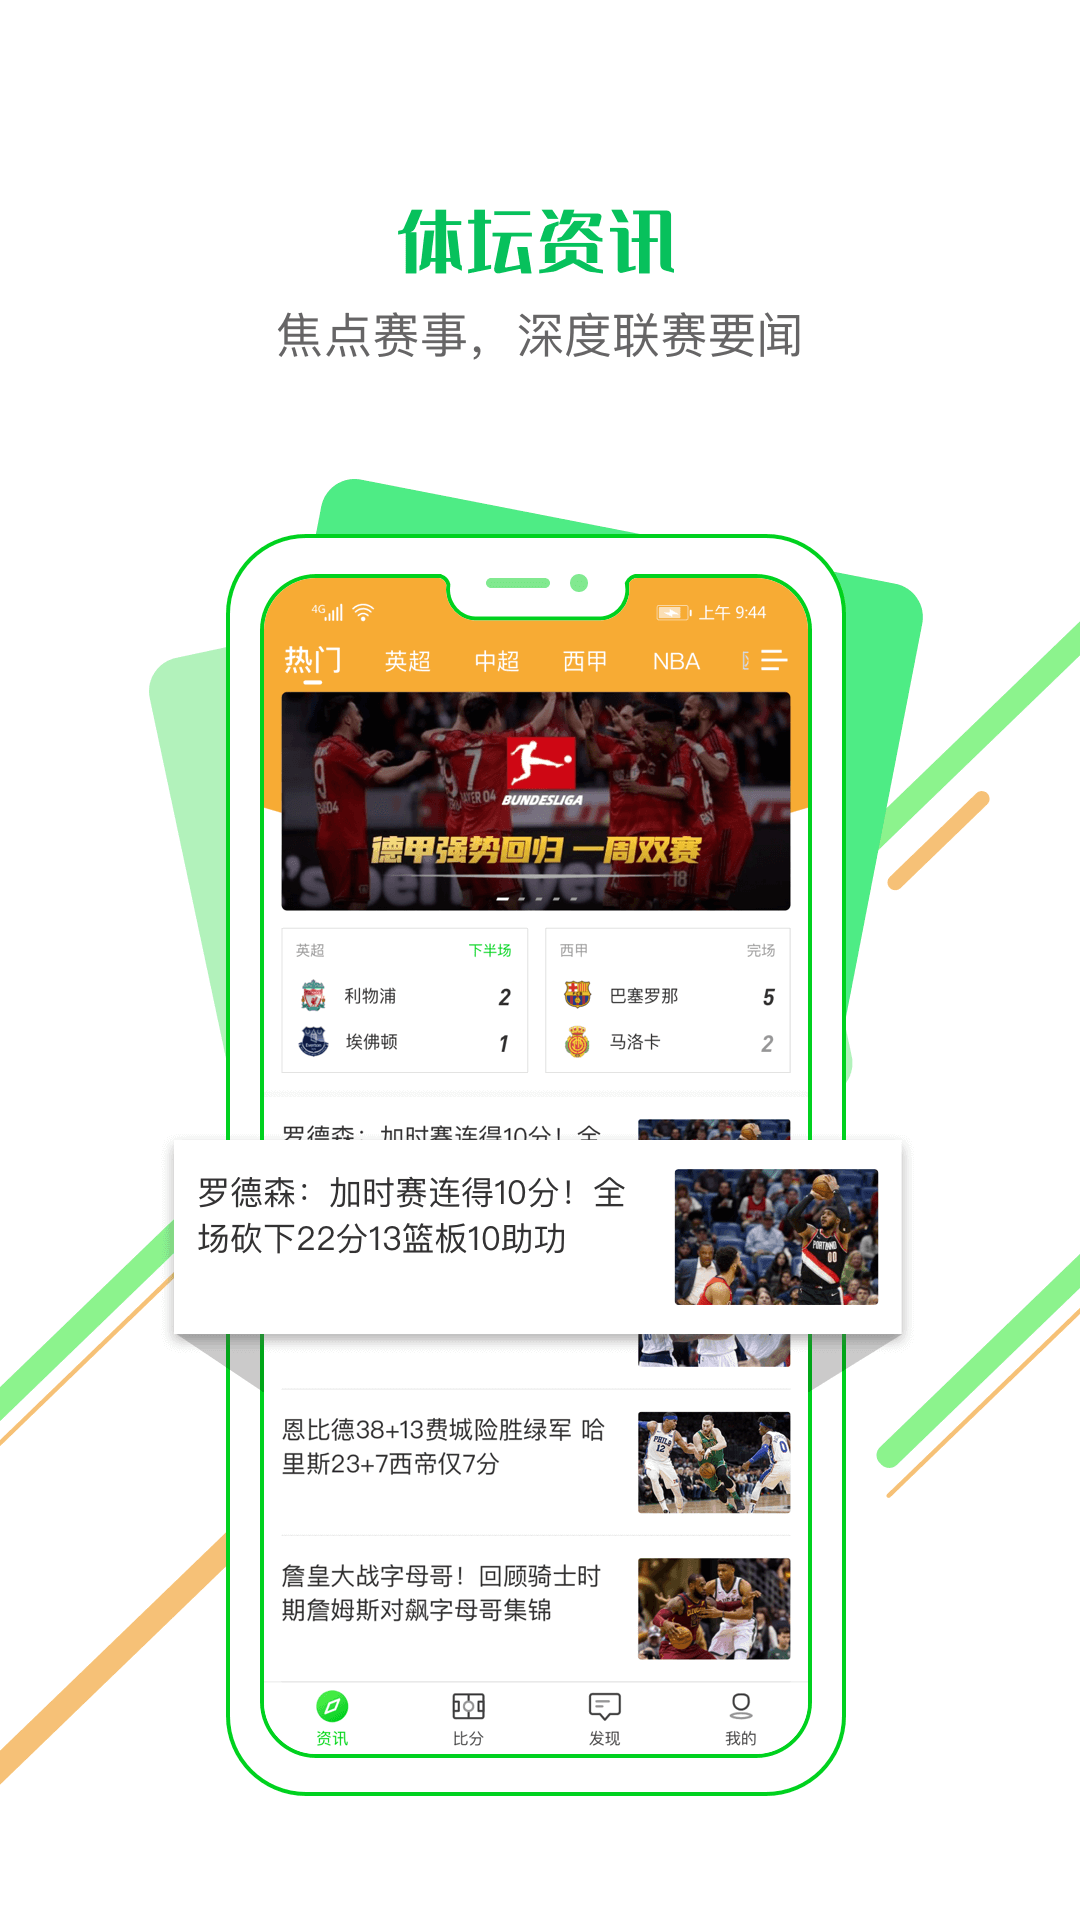 看球通体育手机版黄石开发app的公司